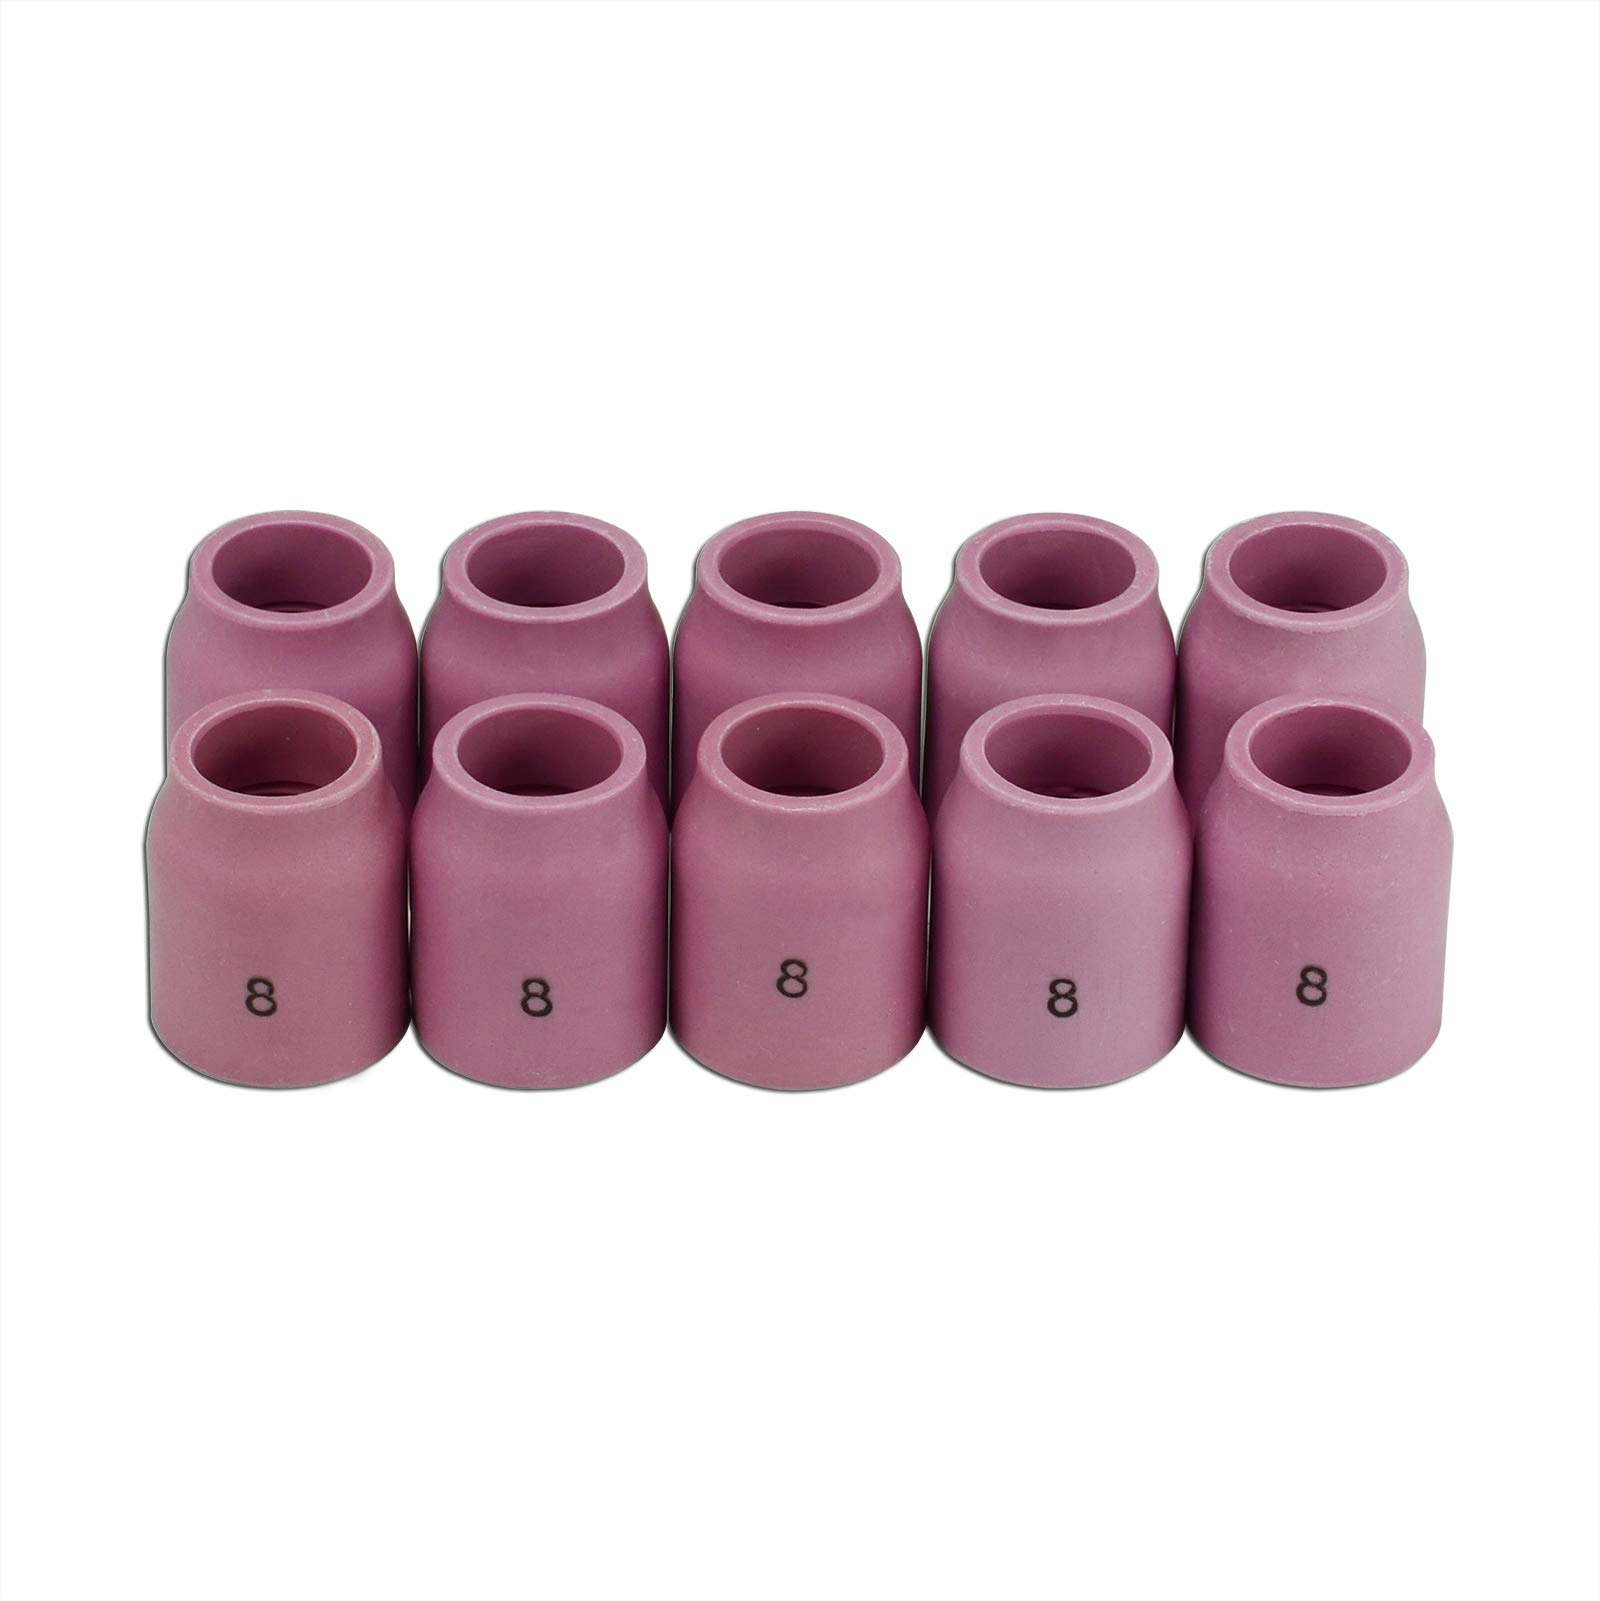 TIG Gas Lens Alumina Nozzle Ceramic Cup 53N61S #8 1/2" Orifice Fit PTA DB SR WP 9 20 24 25 TIG Welding Torch 10pk